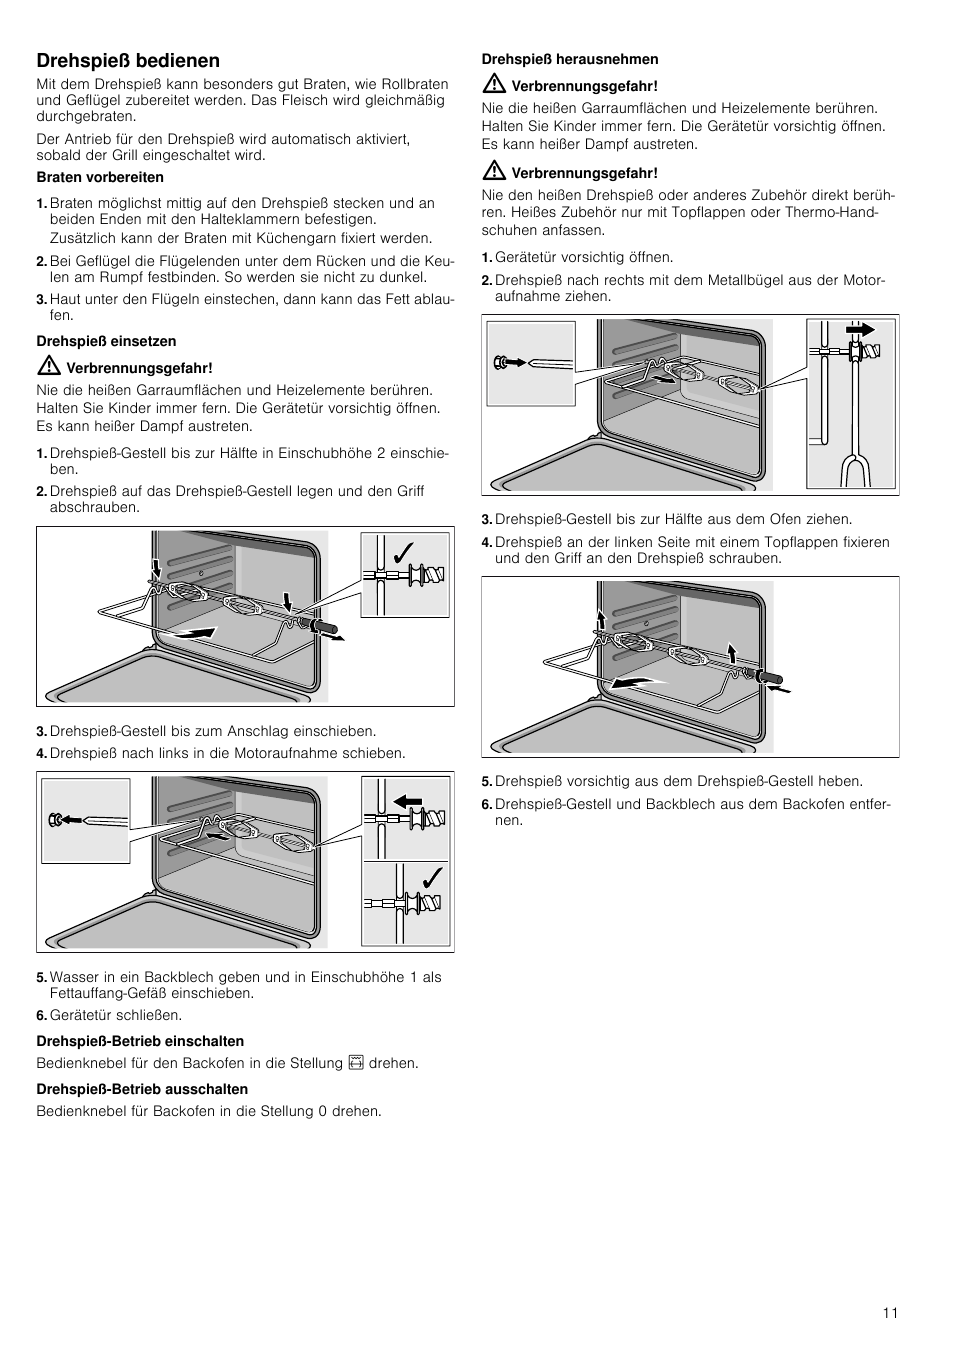 Drehspieß bedienen, Verbrennungsgefahr, Drehspieß-gestell bis zum anschlag  einschieben | Siemens HQ738256E User Manual | Page 11 / 64